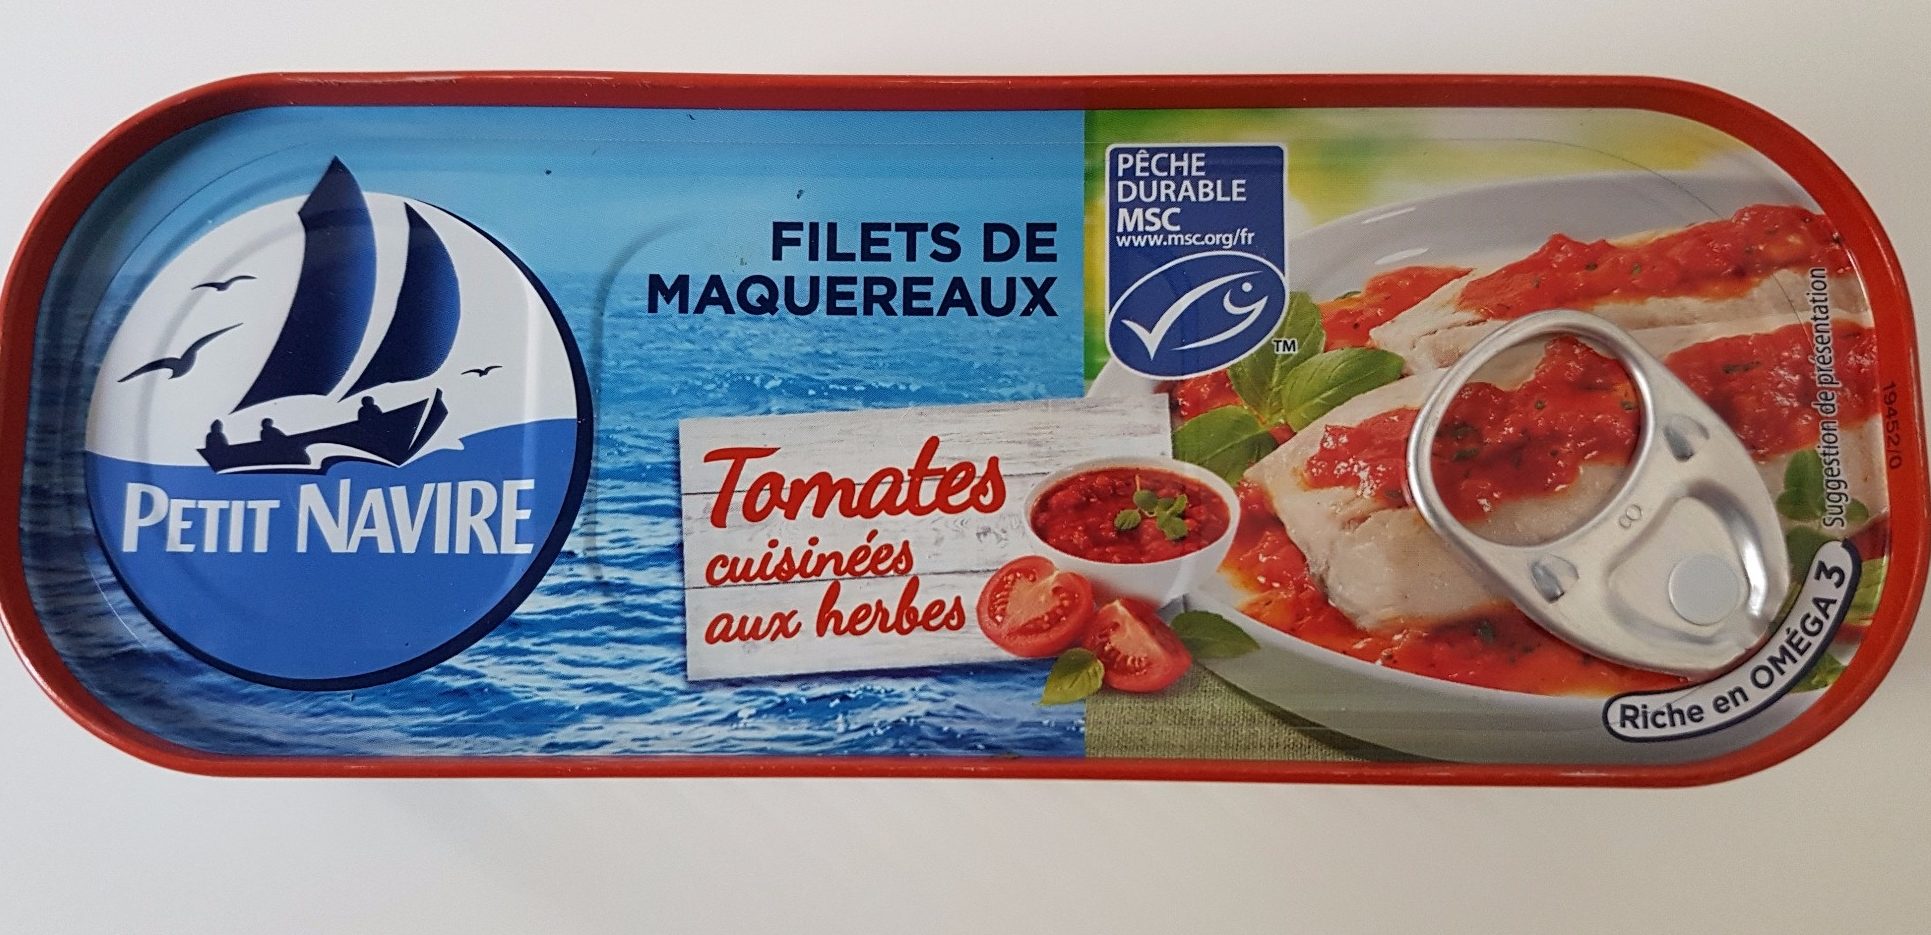 Filet de Maquereaux - Tomates et herbes - Producto - fr